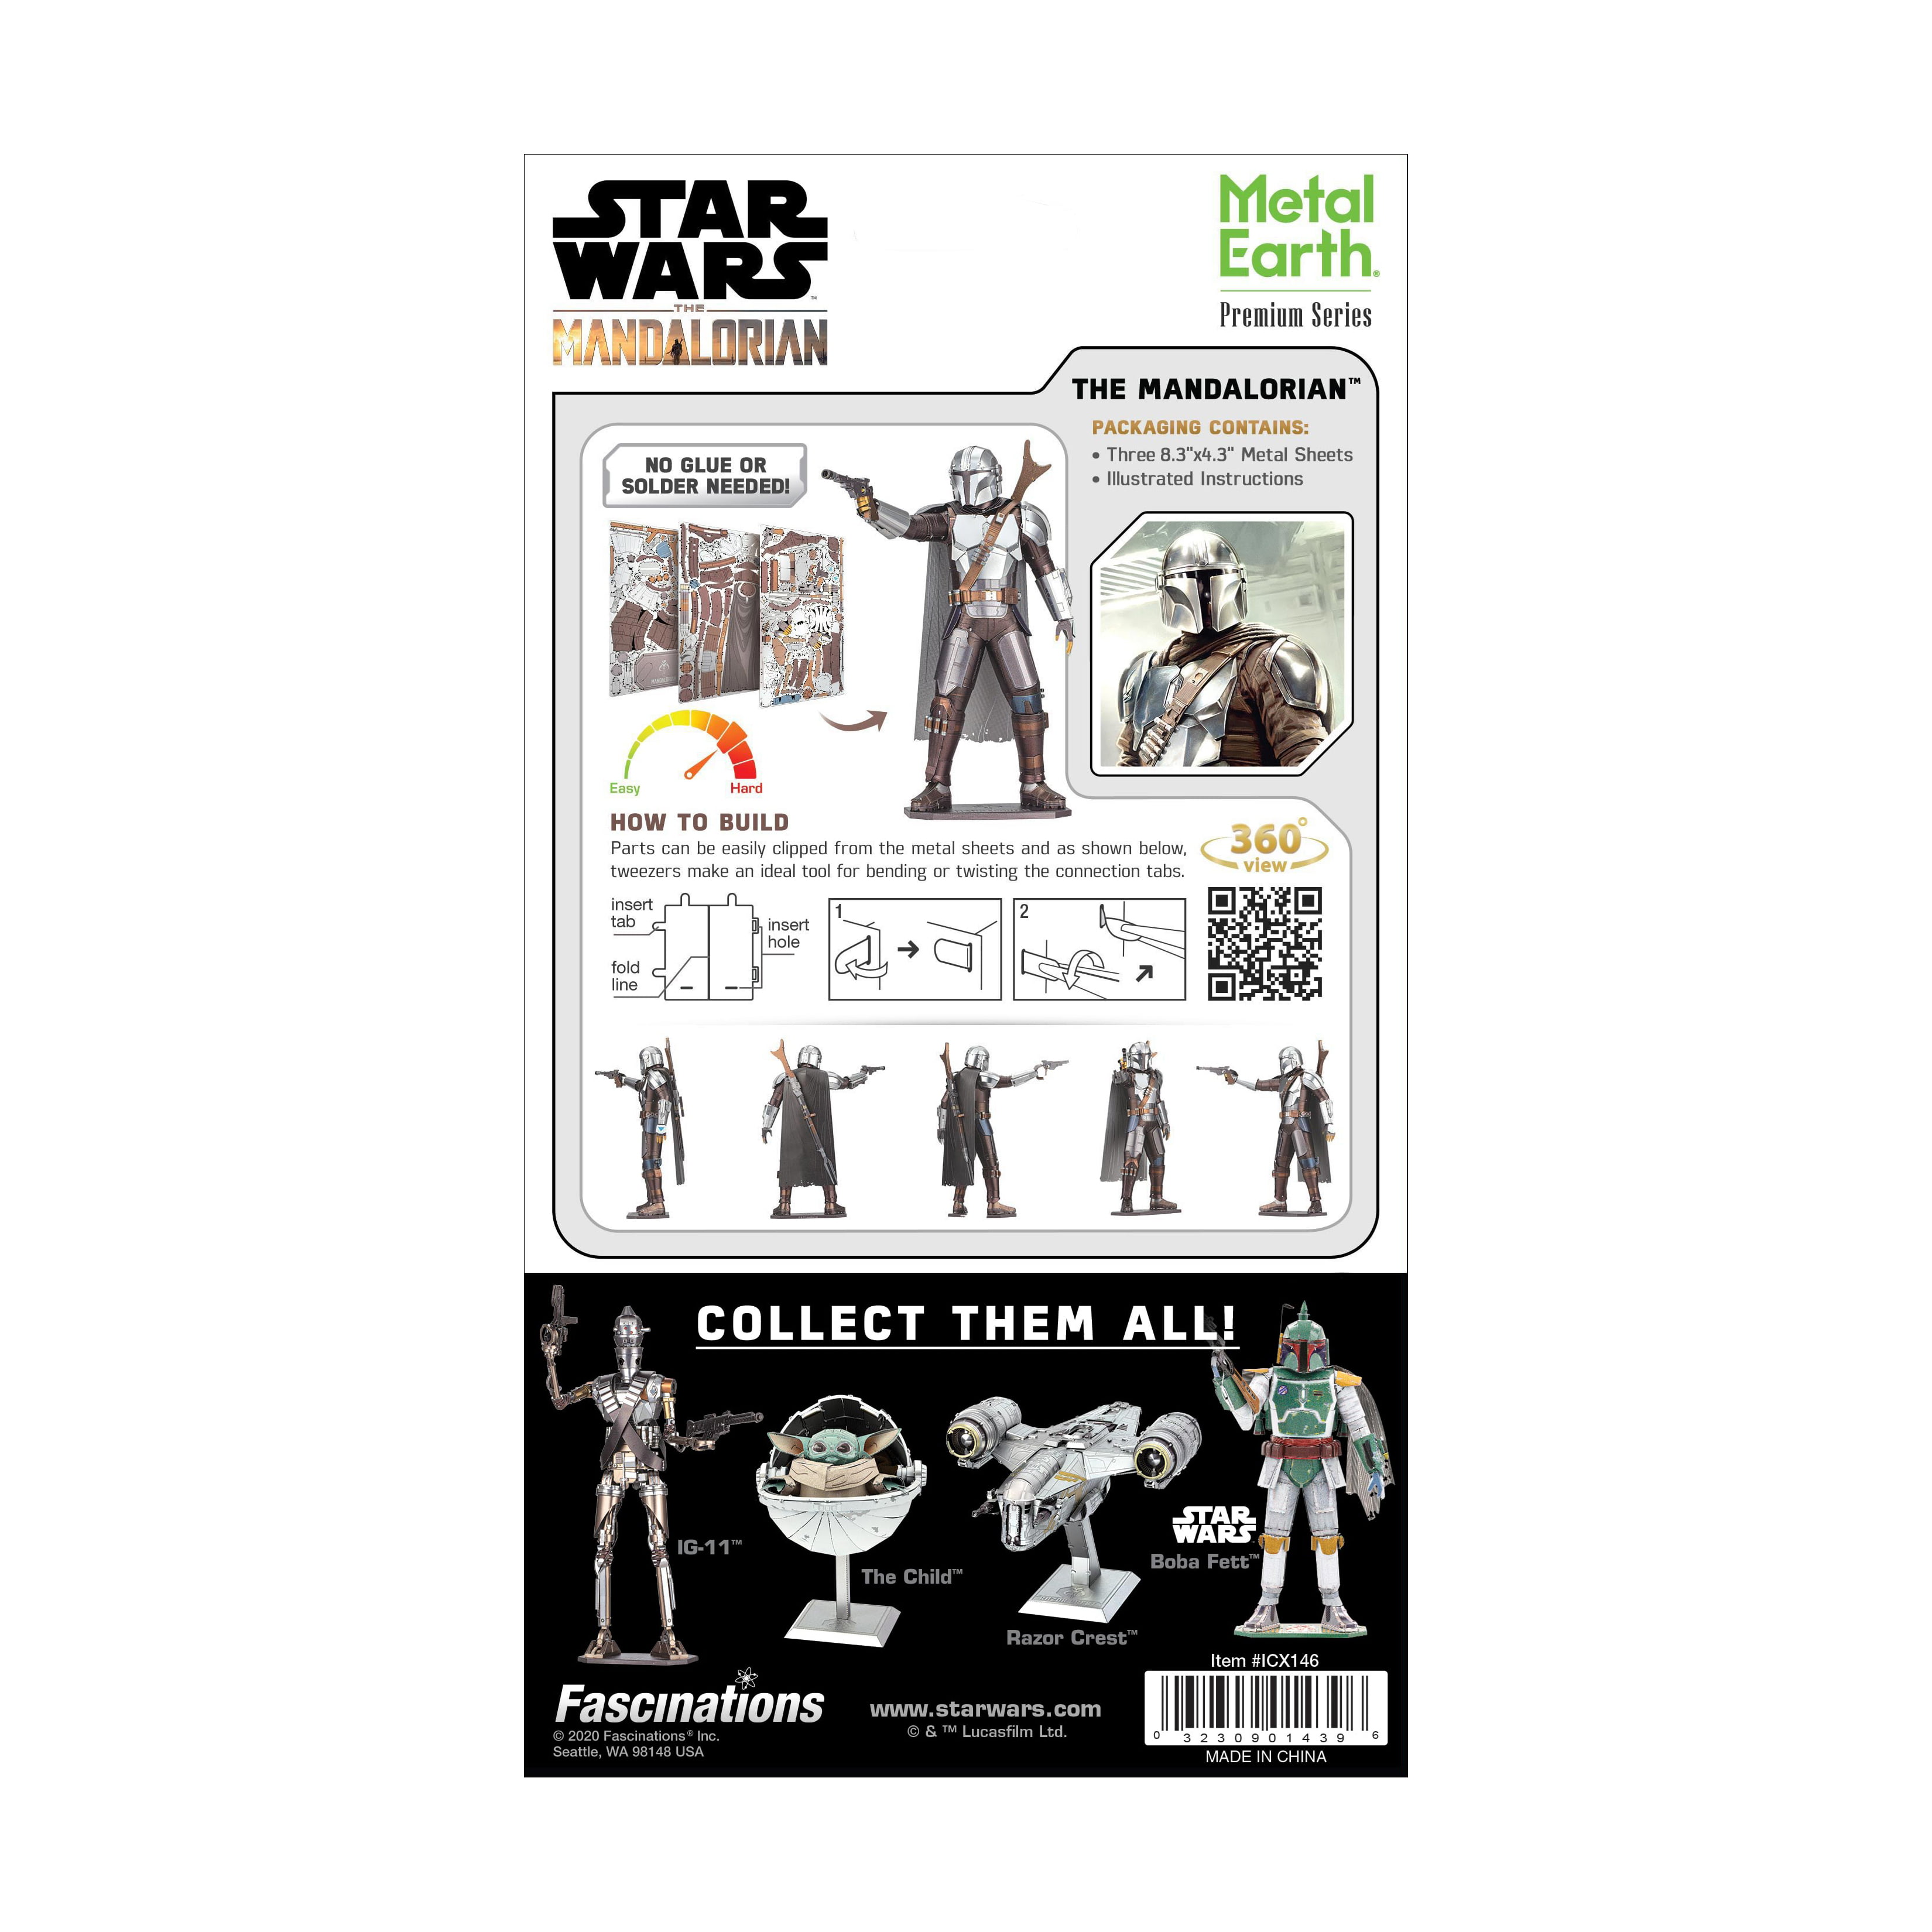 Fascinations Metal Earth Premium Series ICONX 3D Metal Model Kit - Star Wars  The Mandalorian 